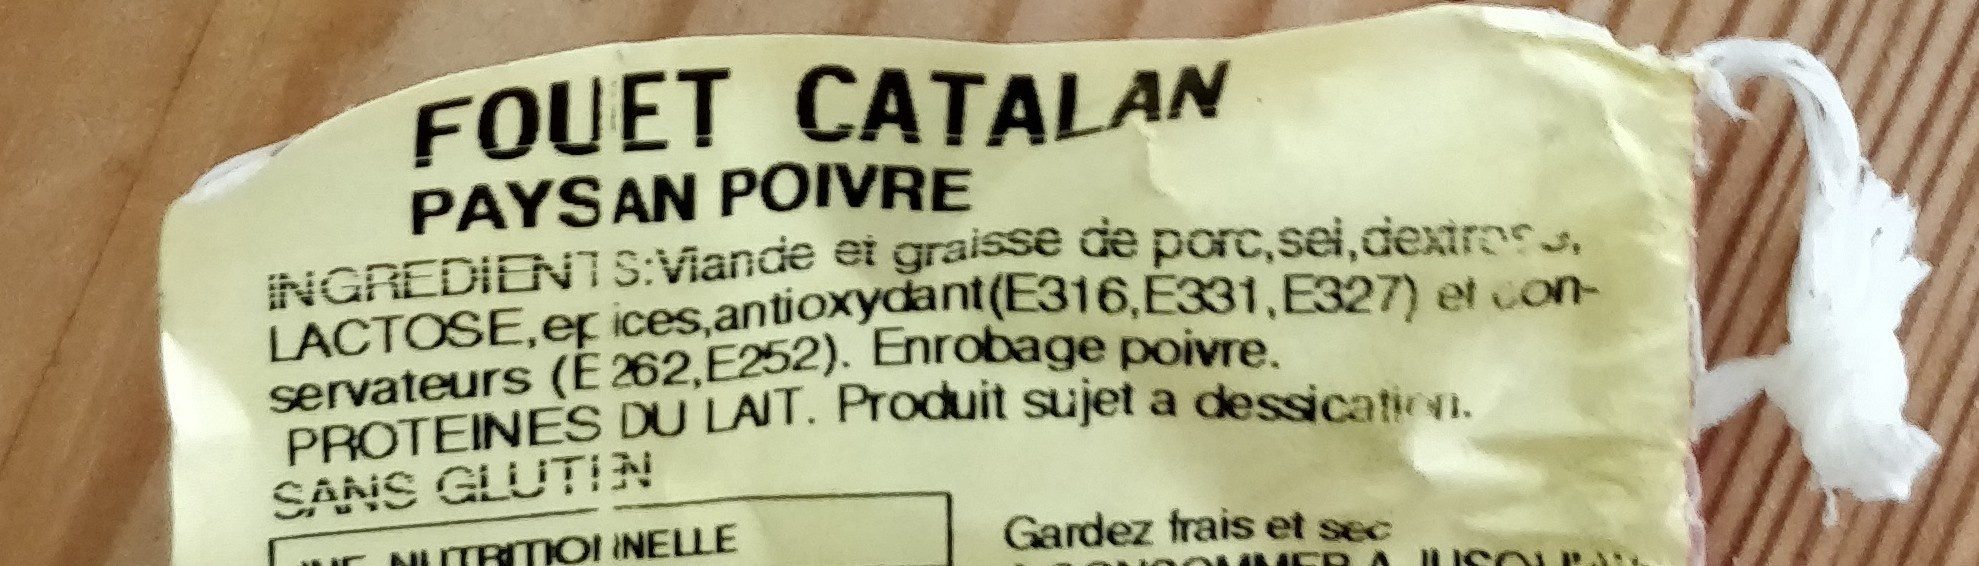 Fouet Catalan paysan poivre - Ingredients - fr